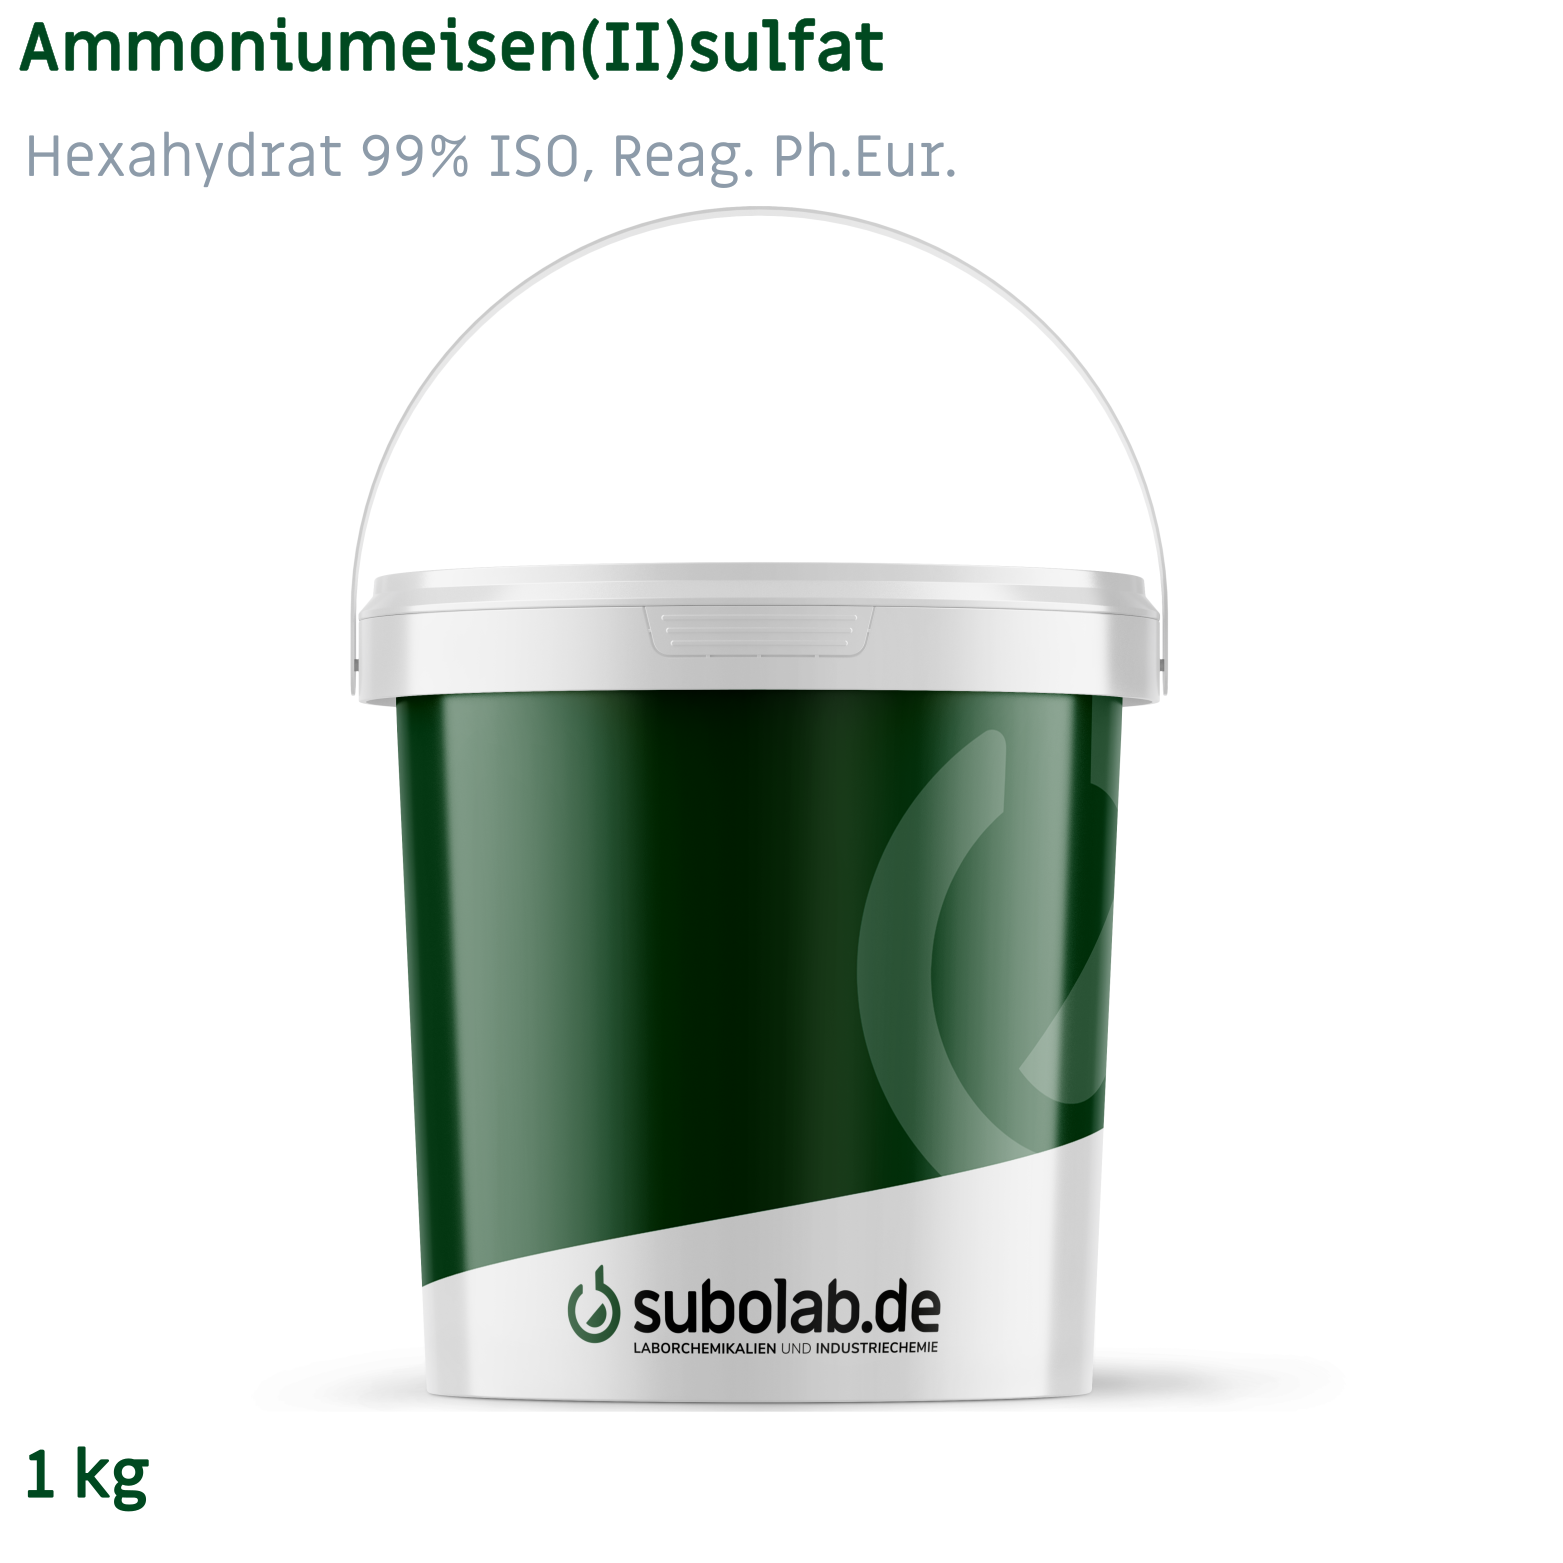 Bild von Ammoniumeisen(II)sulfat - Hexahydrat 99% zur Analyse, ISO, Reag. Ph.Eur. (1 kg)